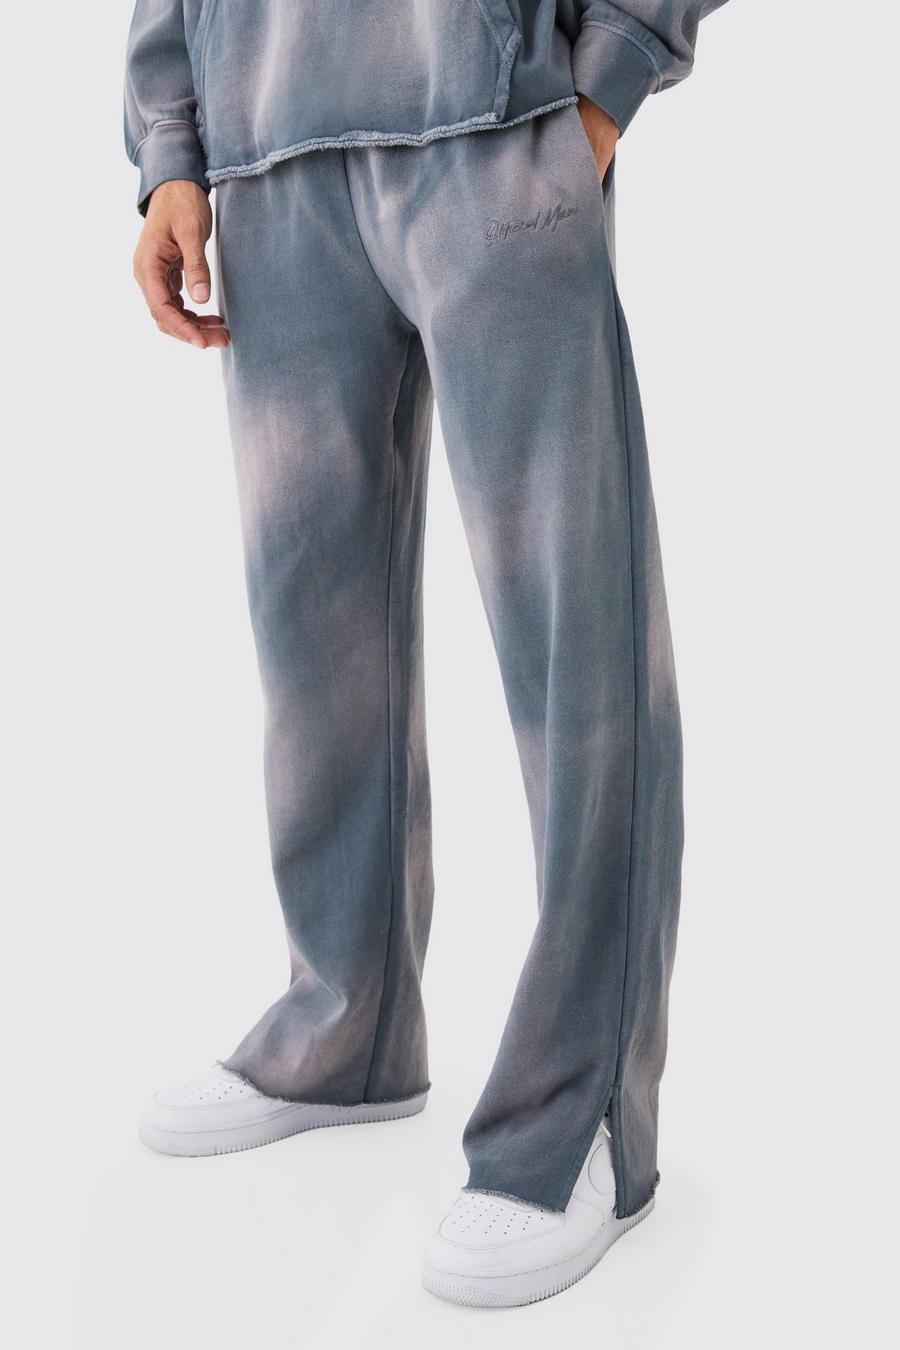 Pantaloni tuta oversize in lavaggio candeggiato con ricami Man e spacco sul fondo, Charcoal image number 1